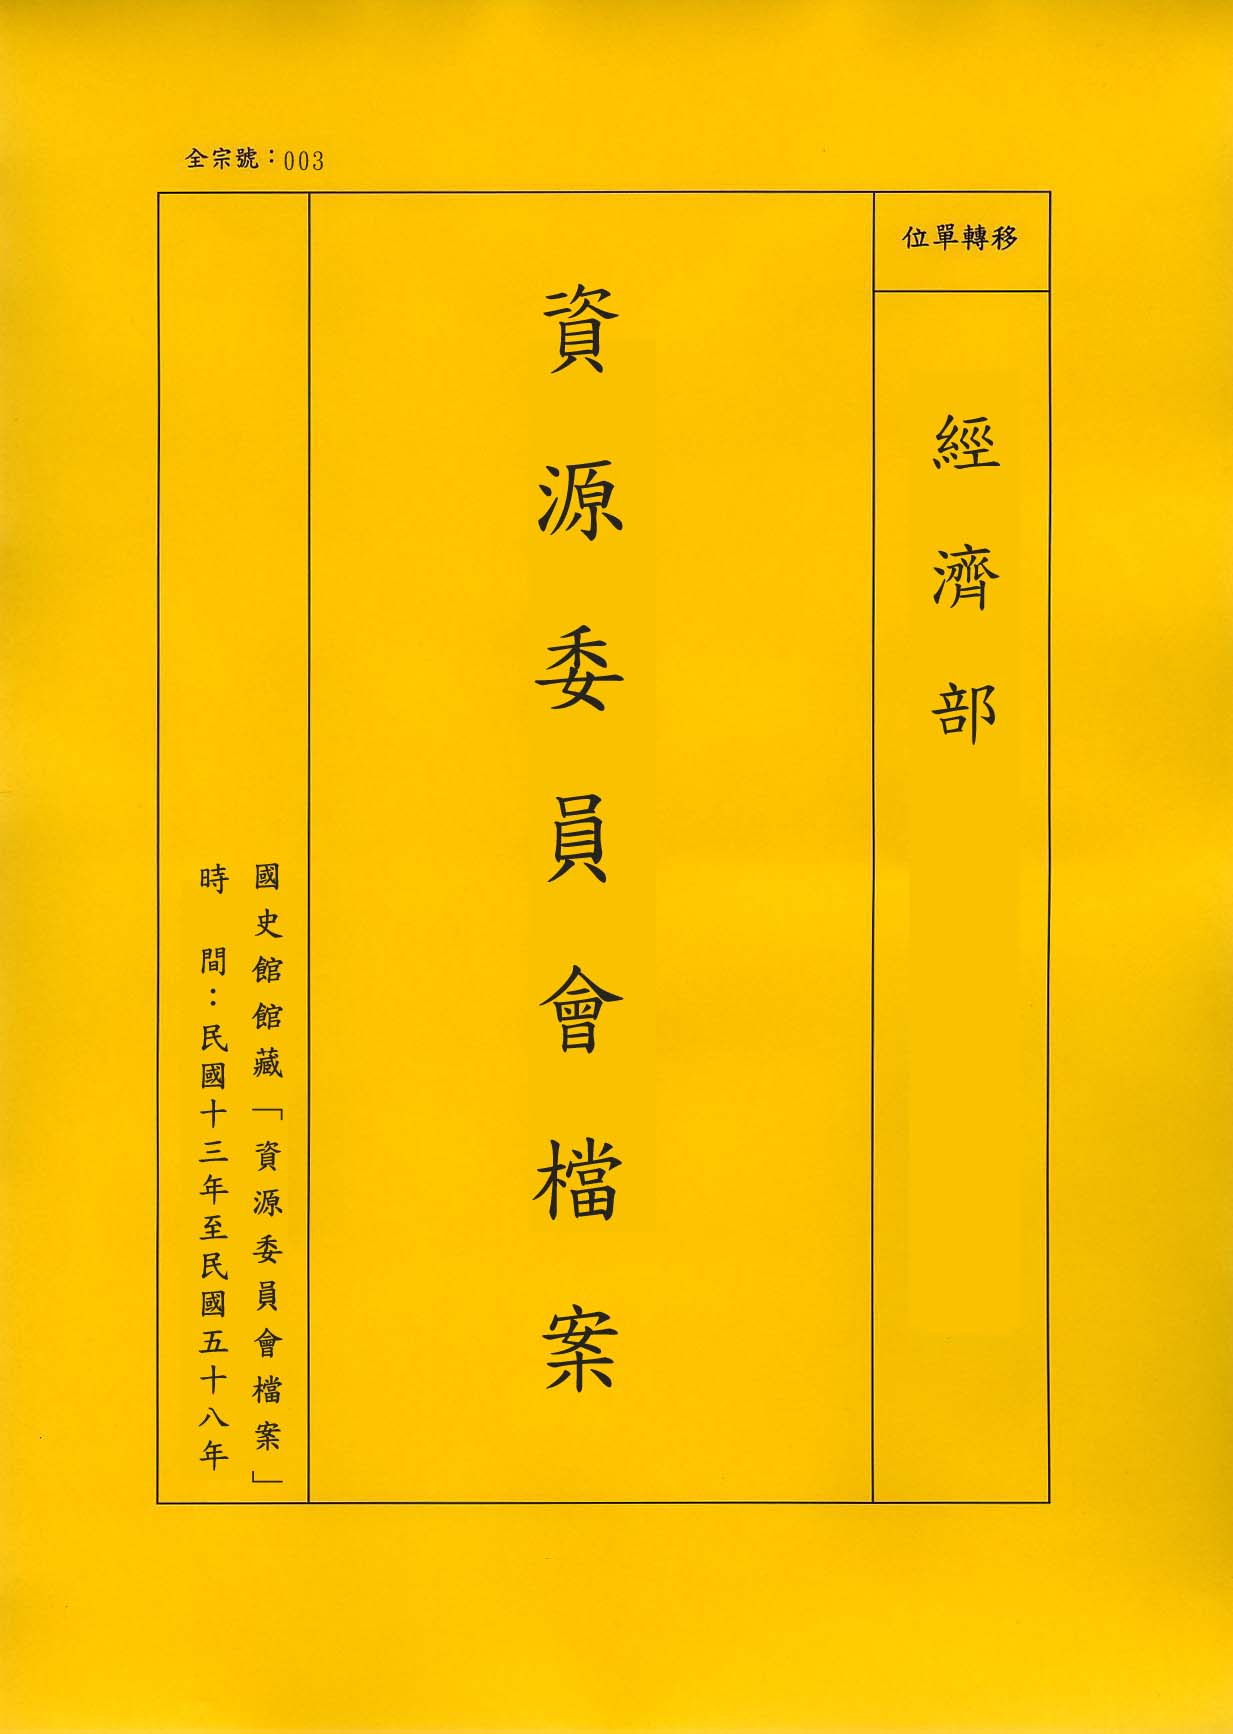 卷名:織衫褲工廠調查表─上海(三)(003-010306-0193)